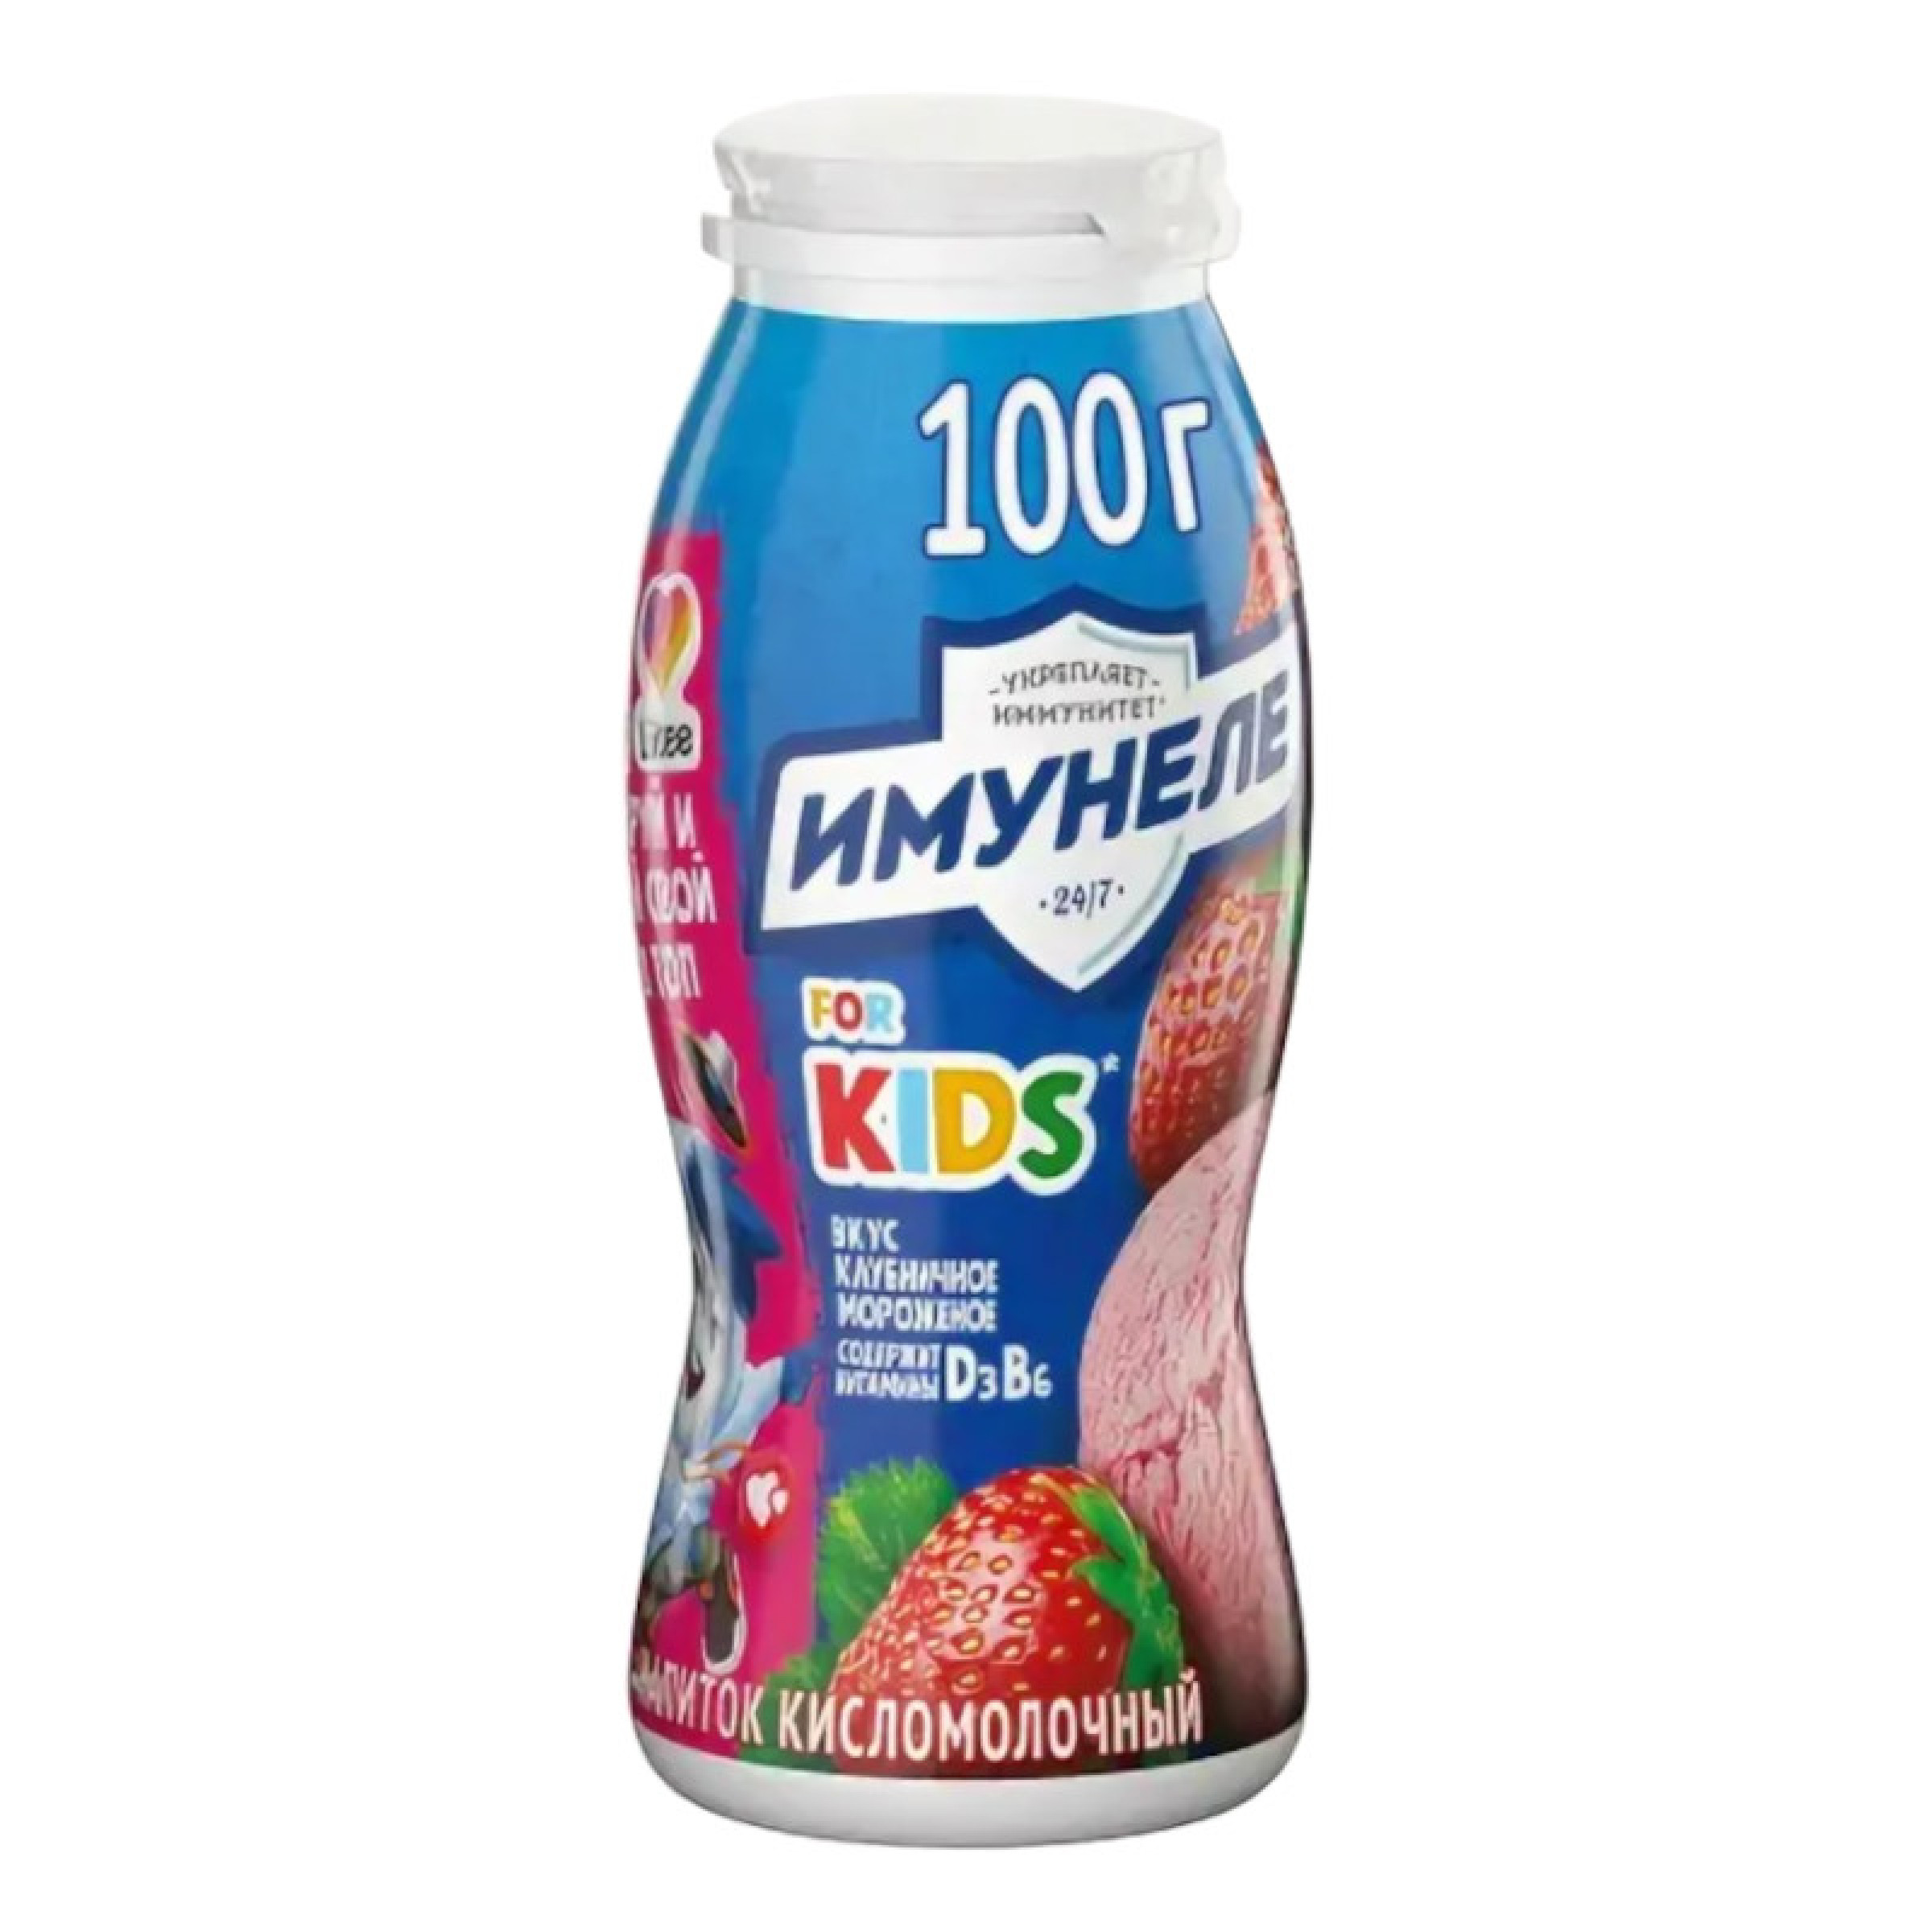 Напиток детский Имунеле 1,5% вкус клубничное мороженое, 100 г